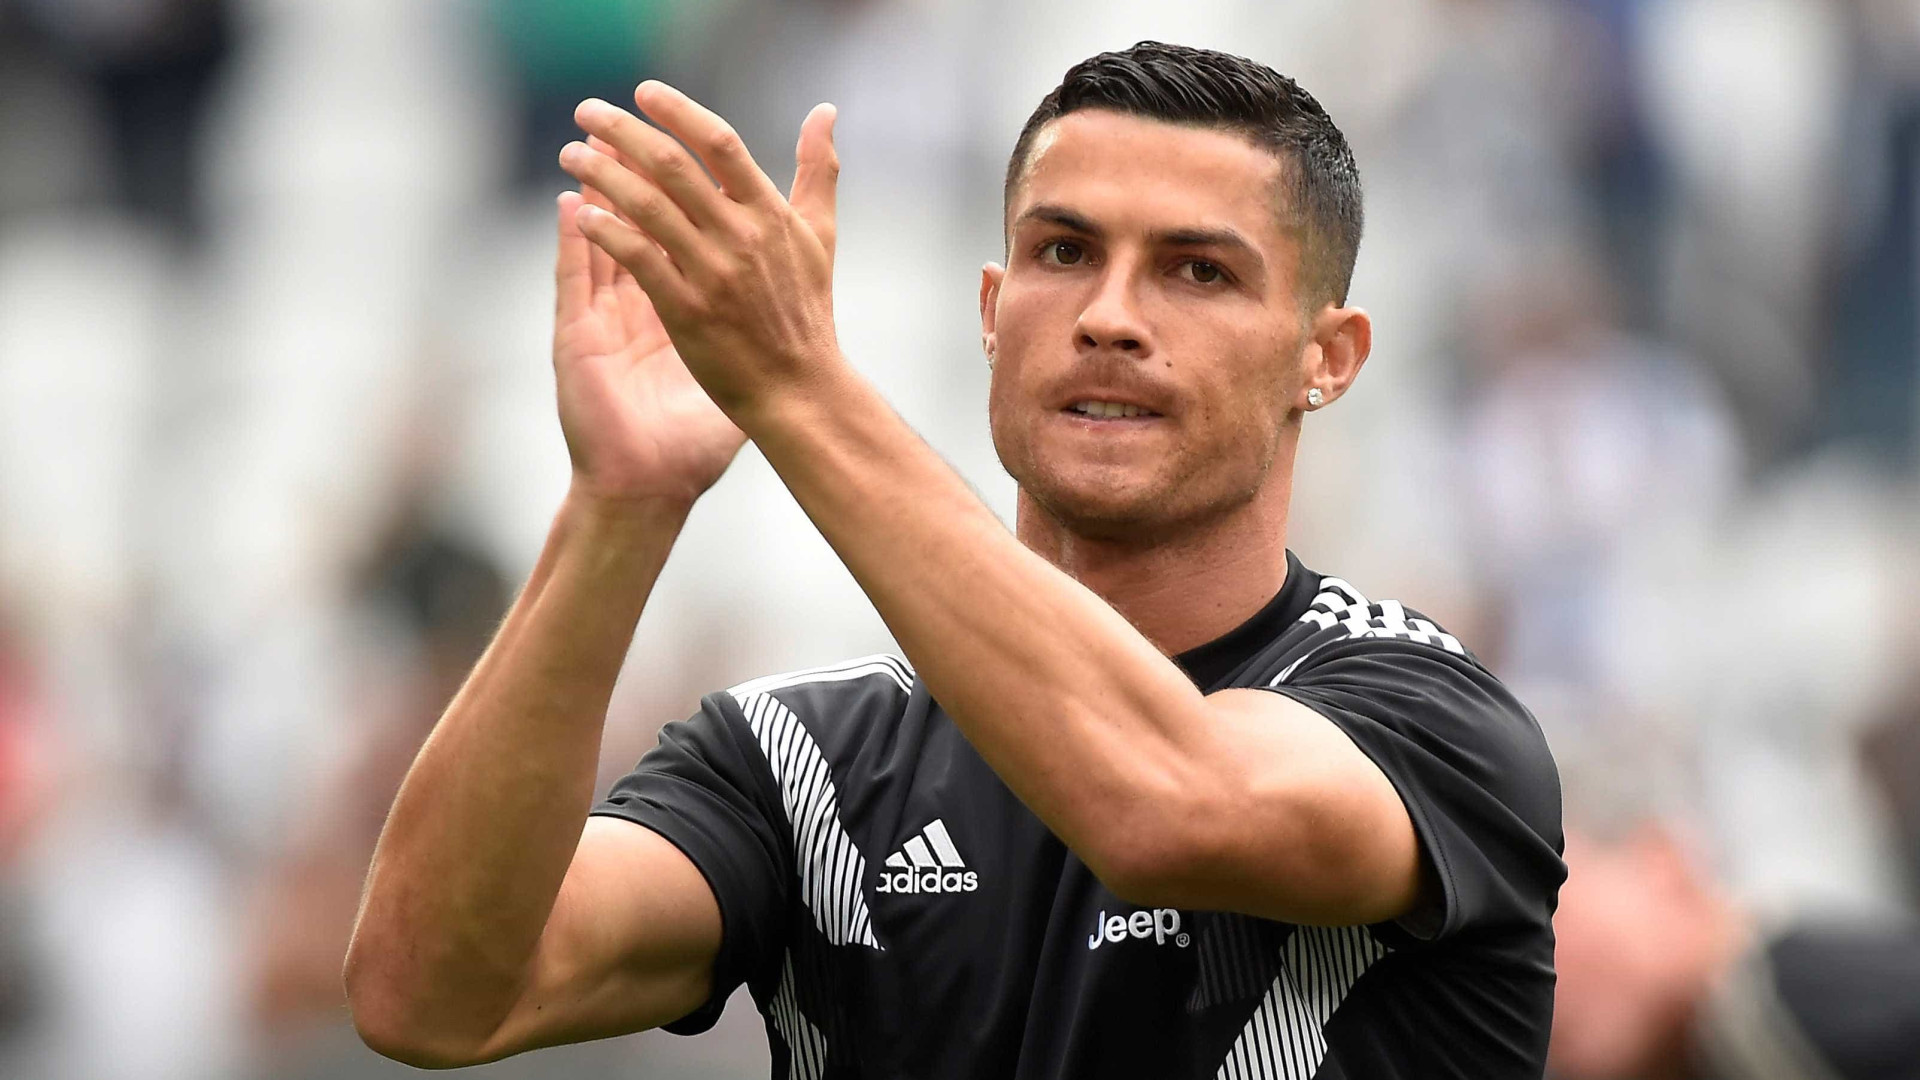 Após expulsão na Juve, Cristiano Ronaldo leva só 1 jogo de suspensão